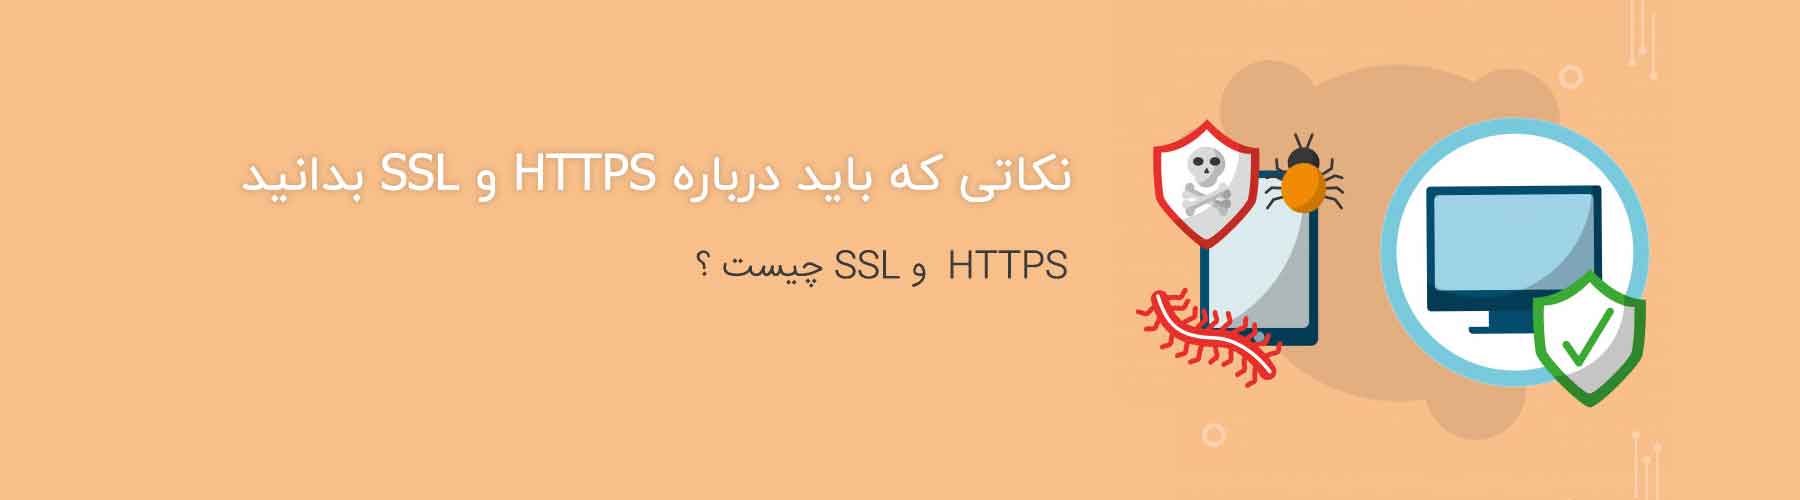 HTTPS و SSL چیست ؟